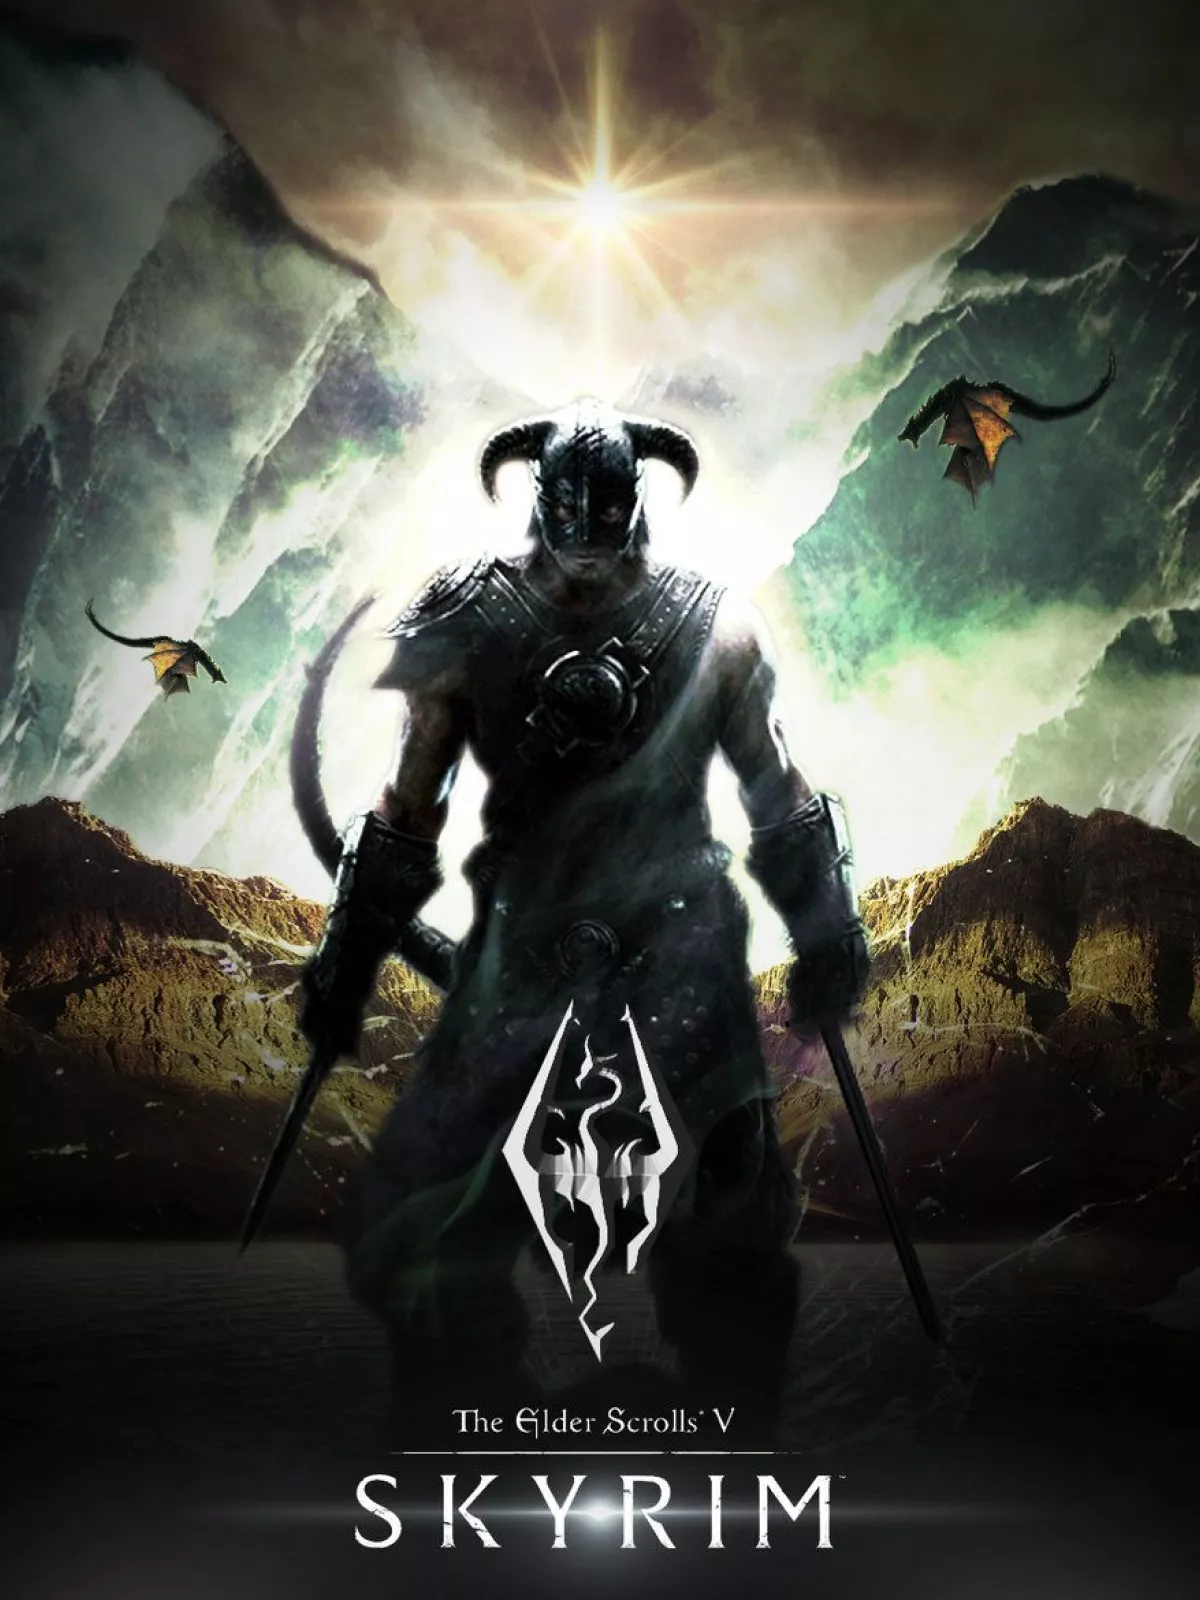 The Elder Scrolls V: Skyrim - системные требования и выбор ПК